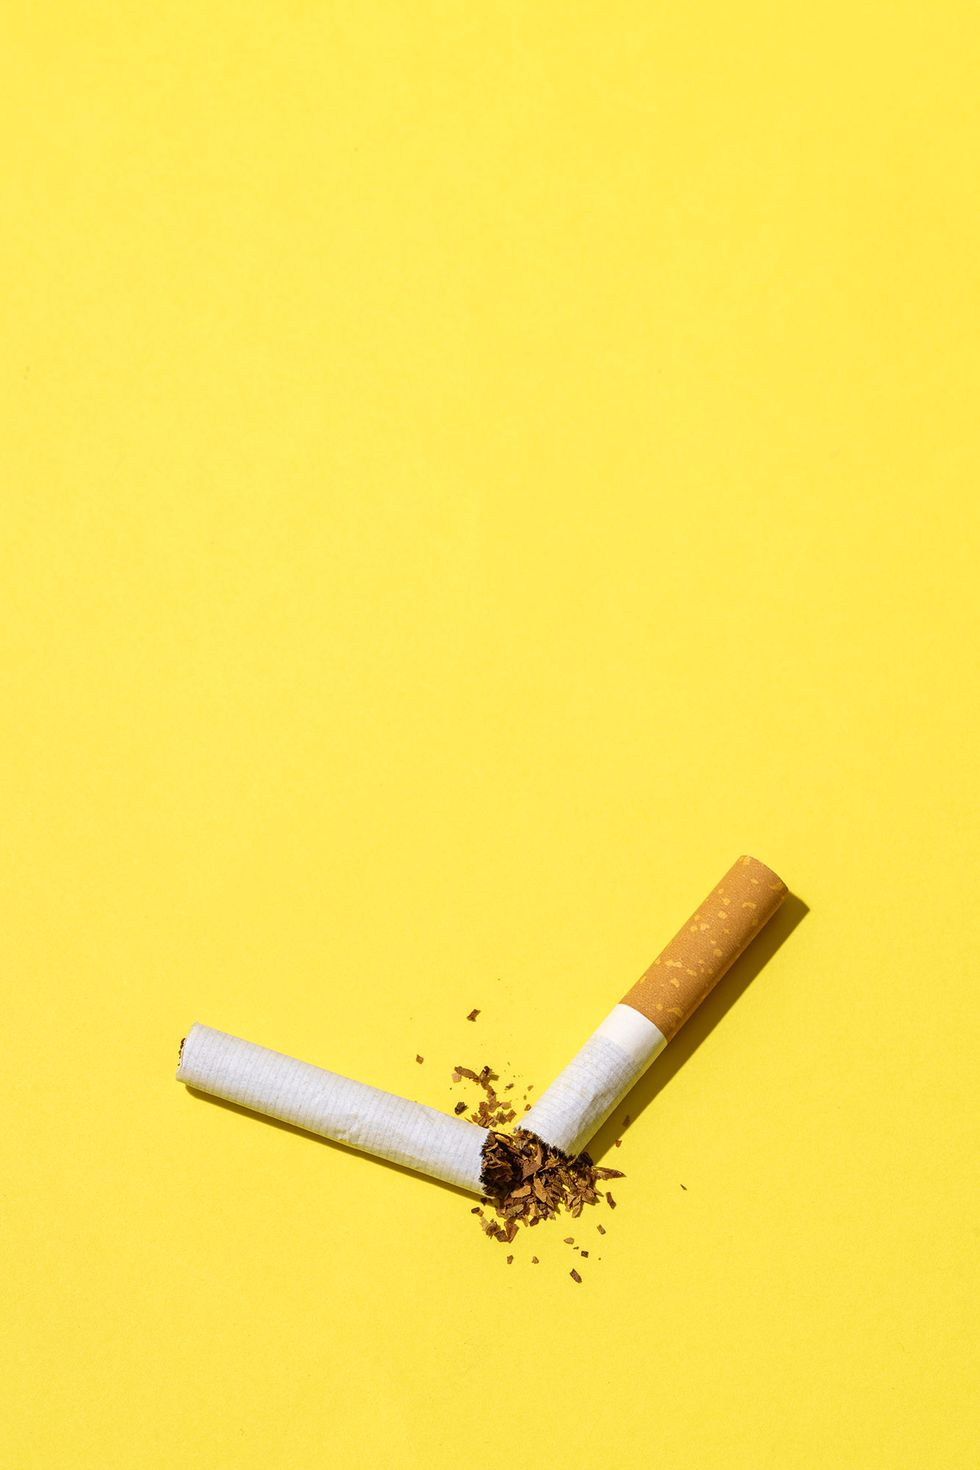 La Farmacia OnLine - ¿Estás pensando en dejar de fumar?  lafarmaciaonline.com te ofrece una variedad de productos y consejos que  pueden ayudarte. - *,  *